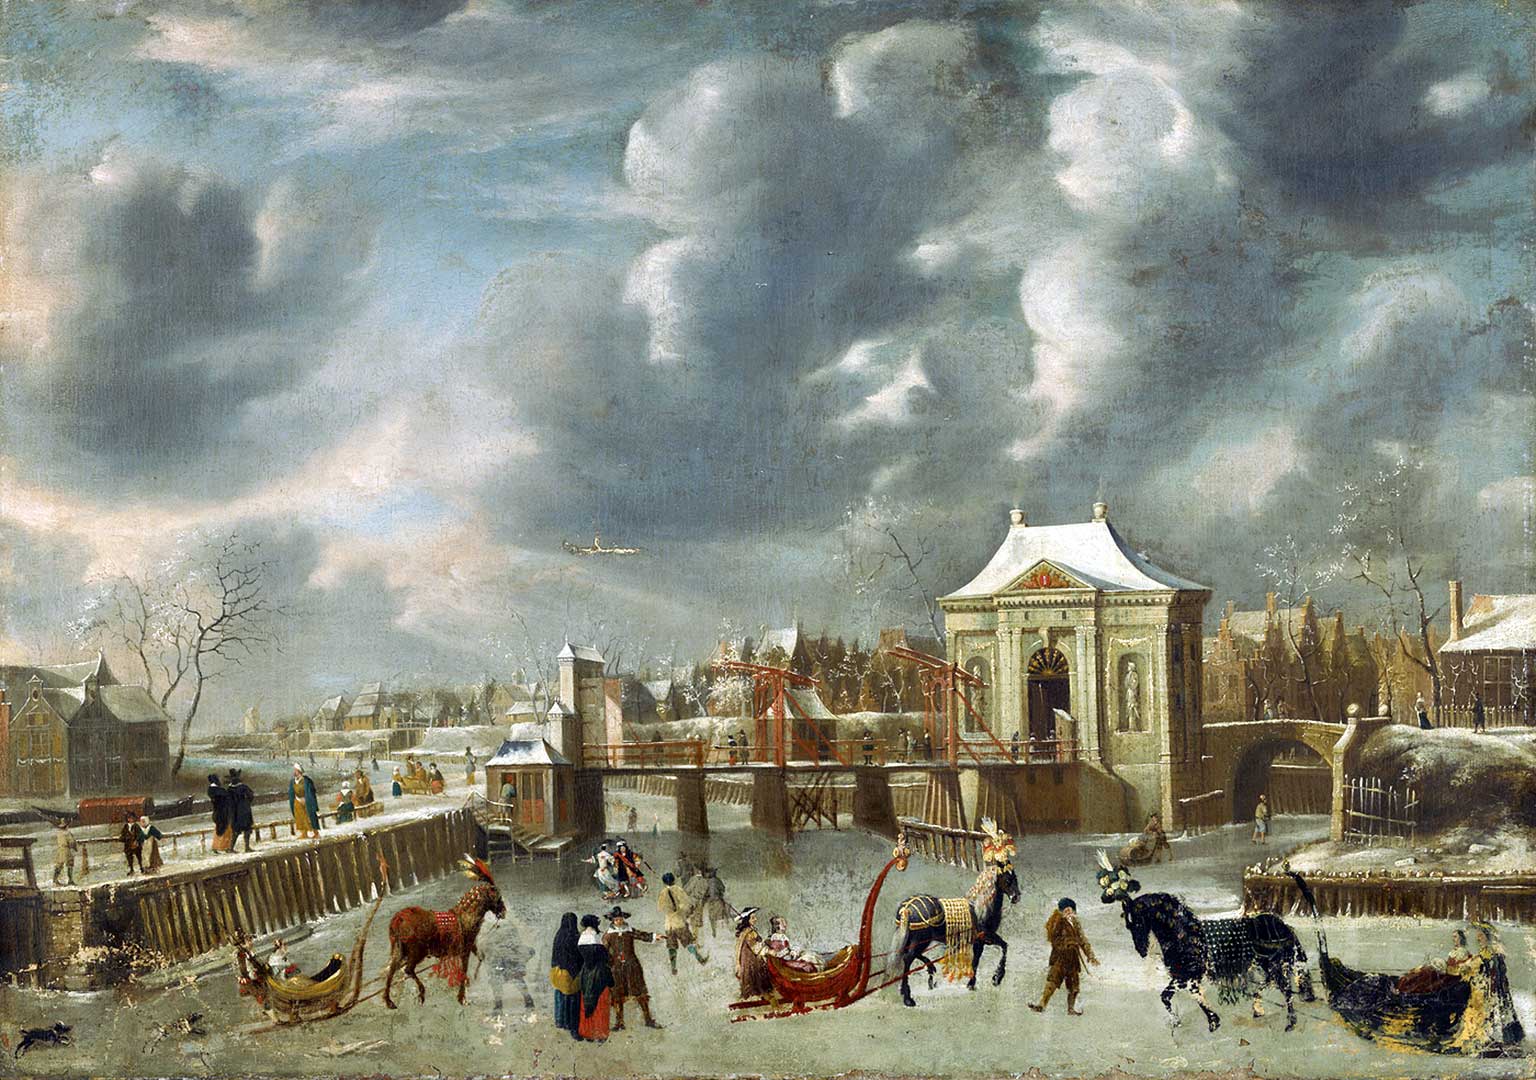 Heiligewegspoort, Amsterdam, in 1653, painting by Jan Abrahamsz Beerstraaten